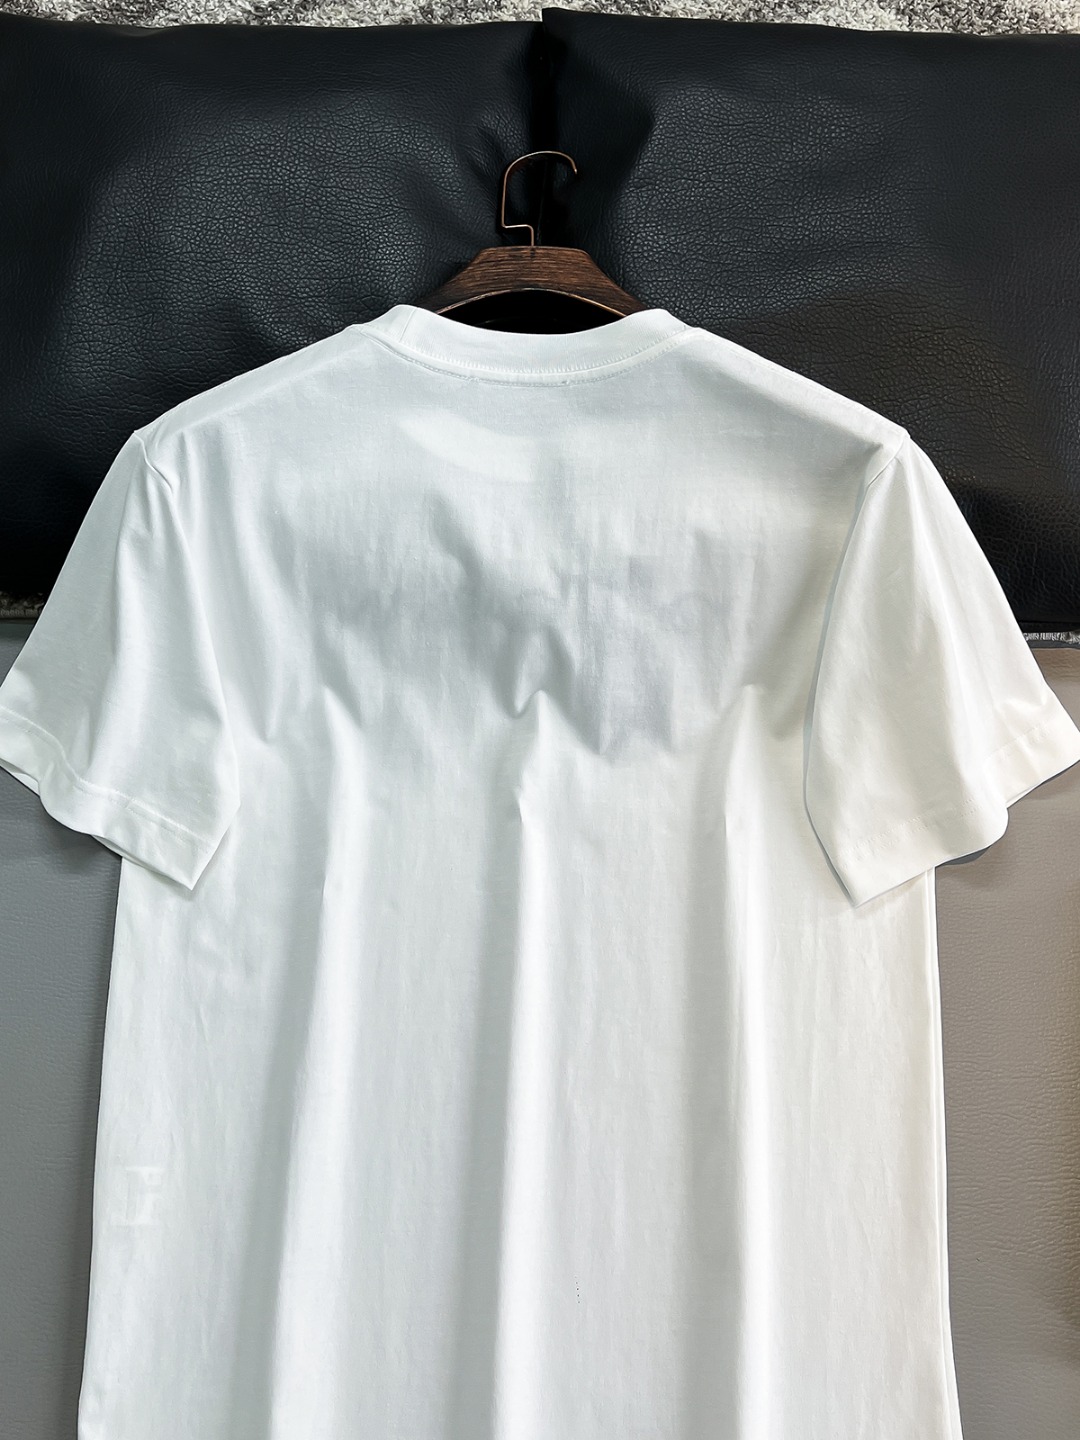 新品2024SS春夏Pr*daMilano标识圆领短袖T恤OS设计裁剪,兼具个性时尚范儿,与生俱来的不平